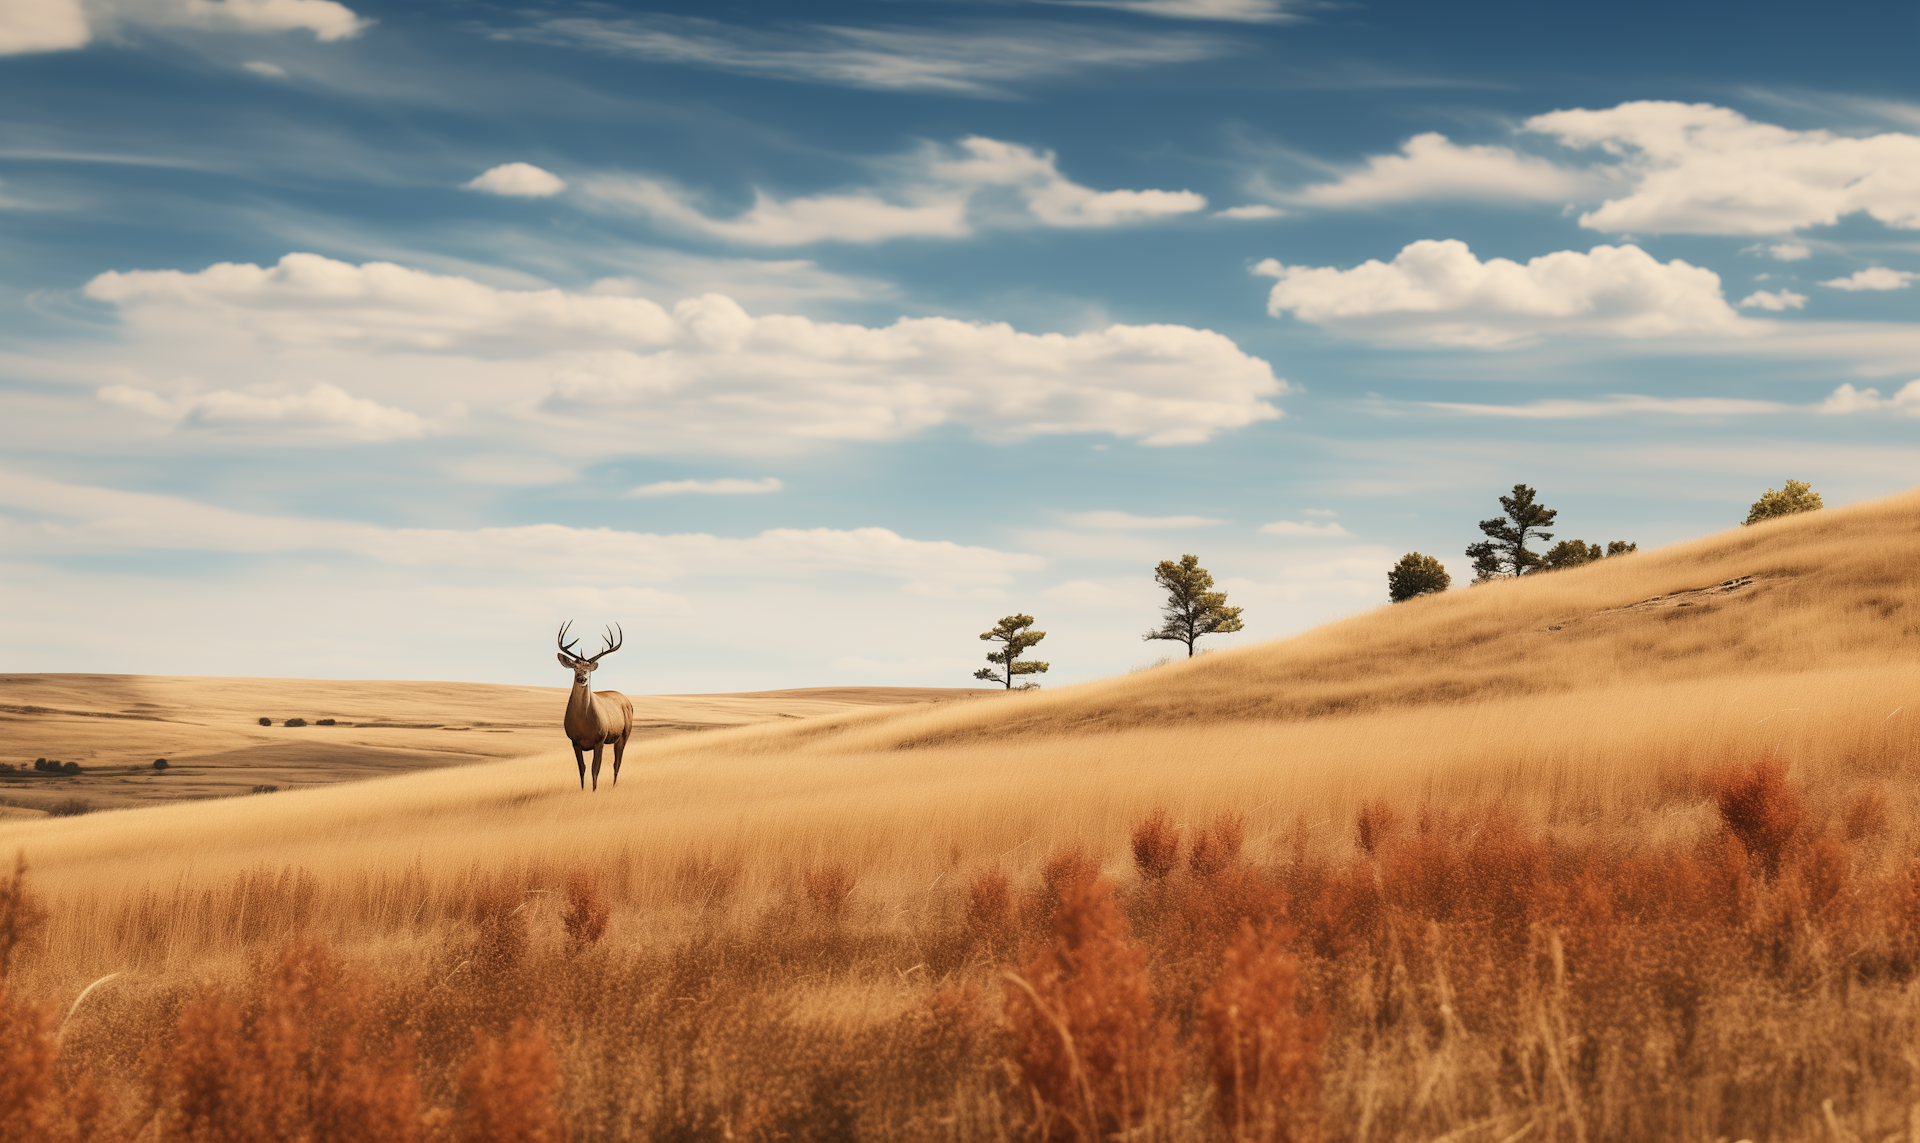 A Red Deer on the Prairies